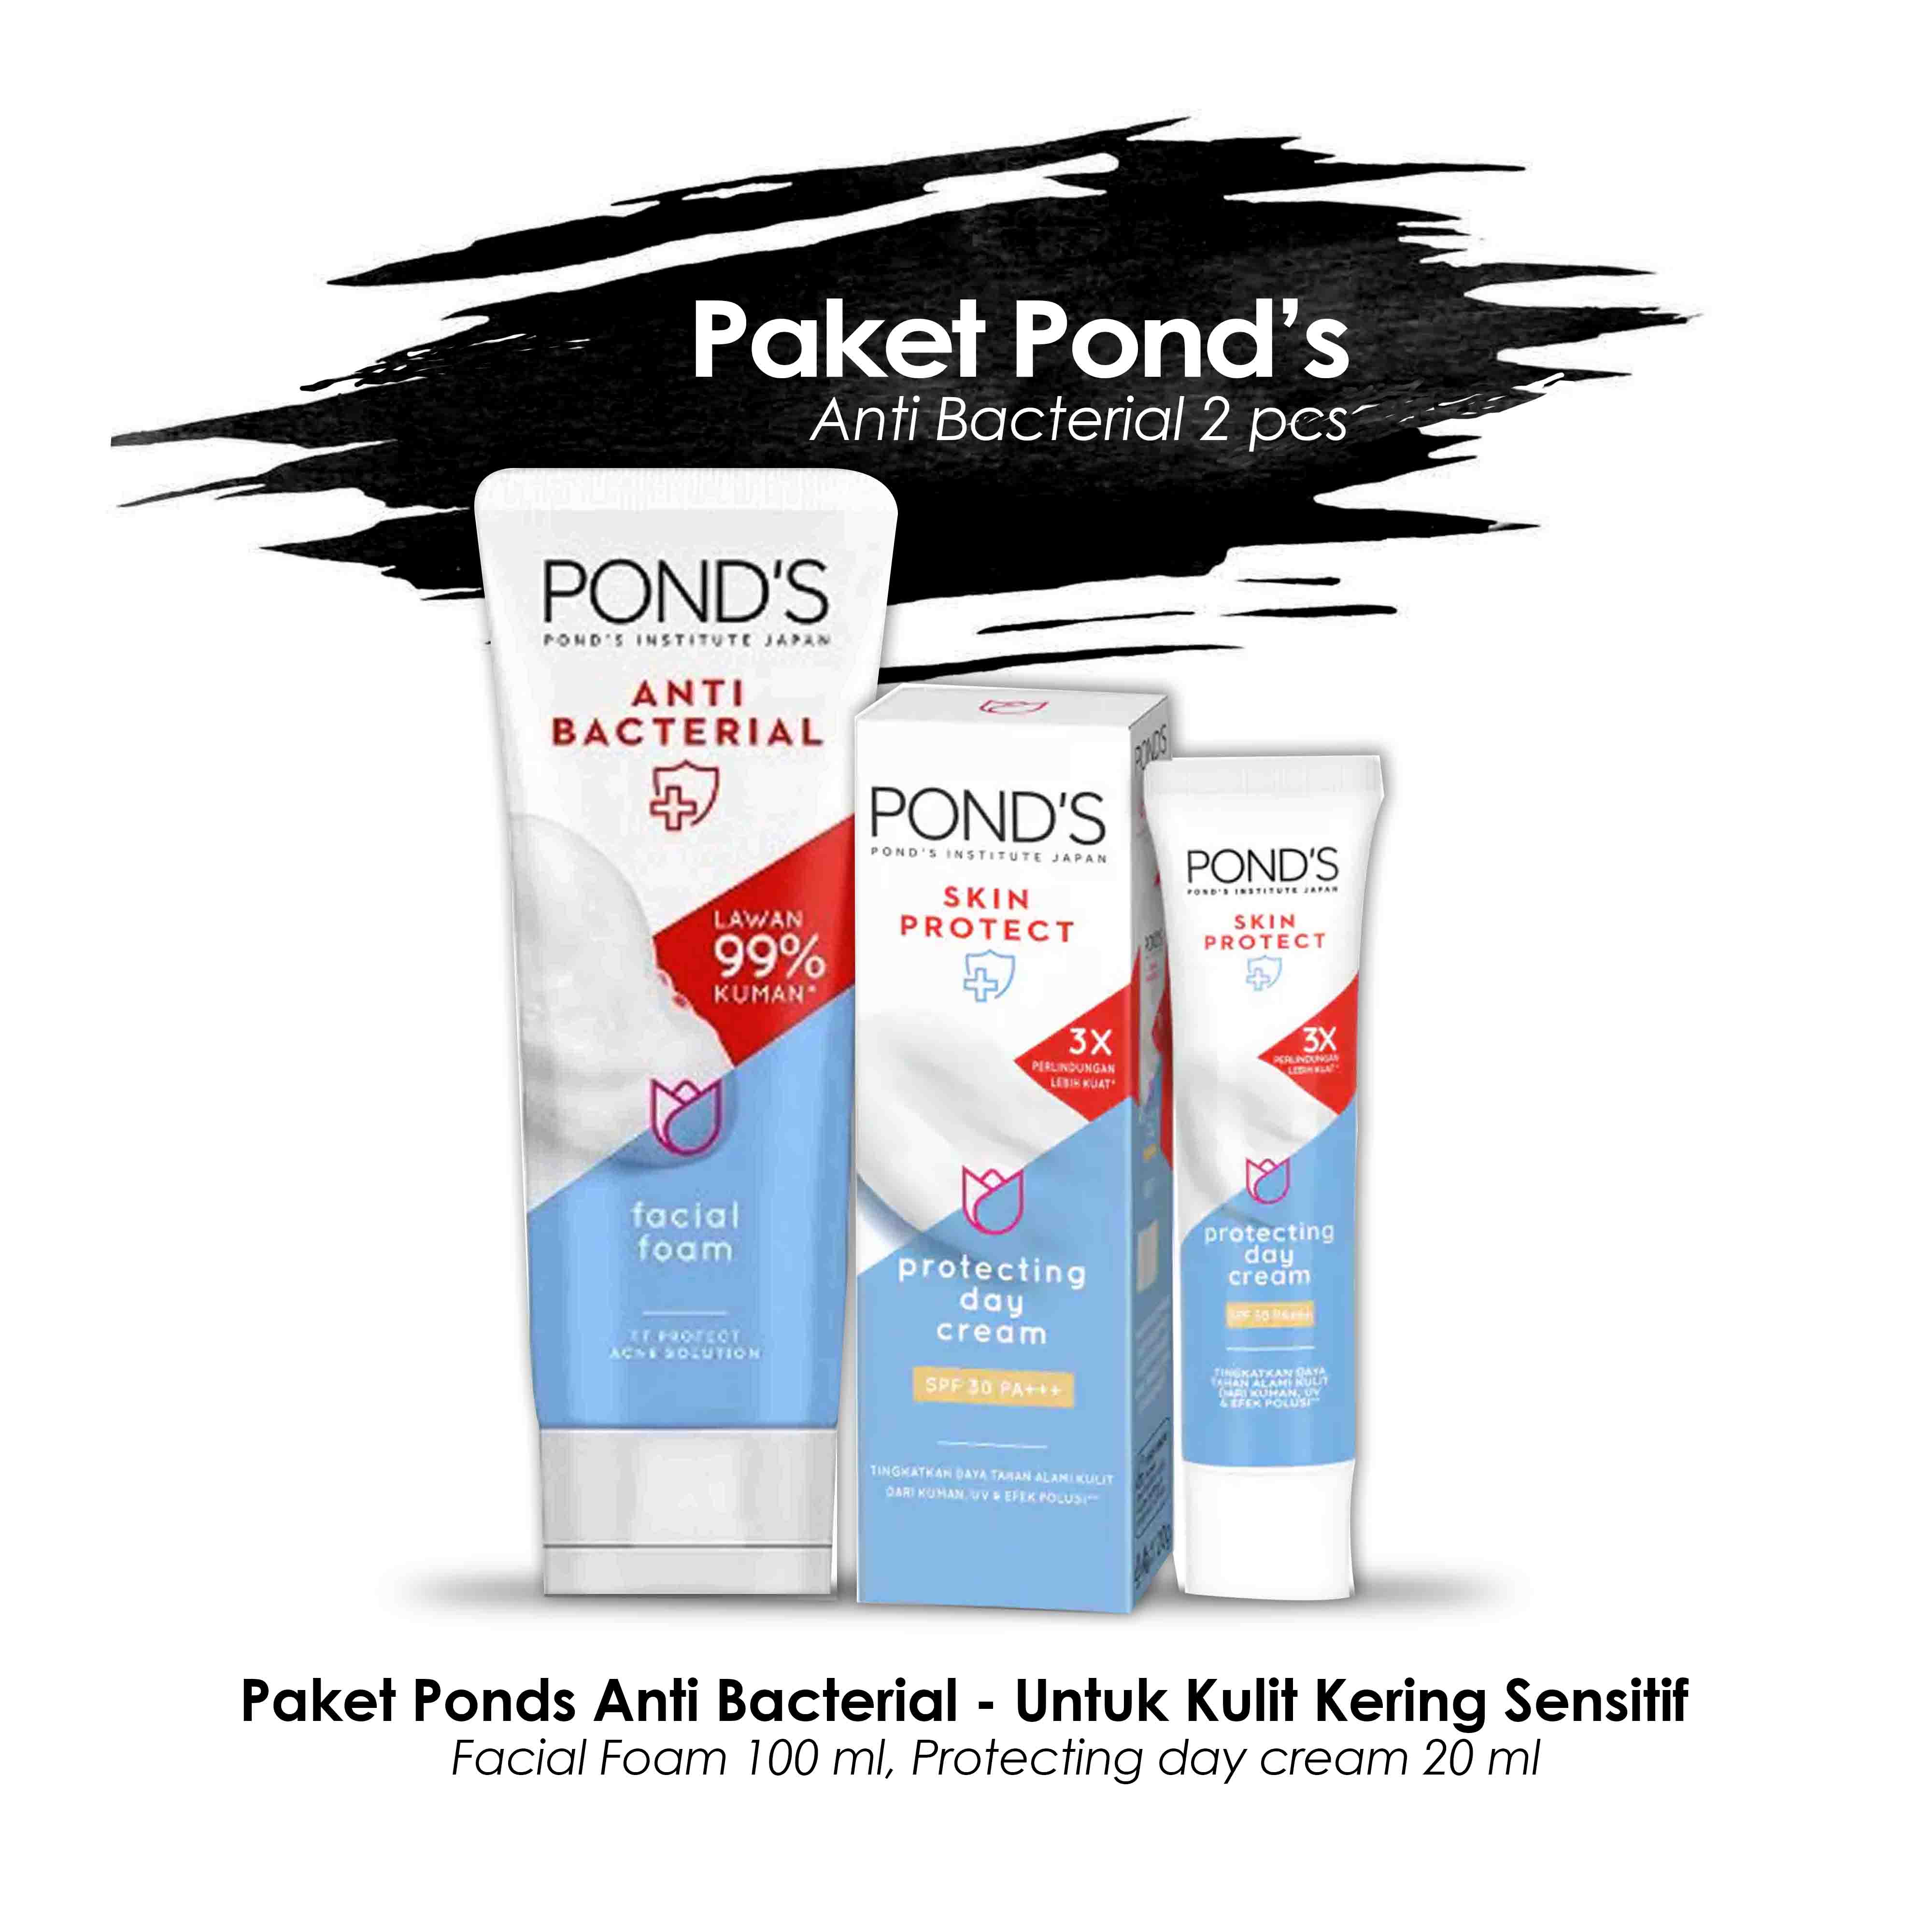 Paket Ponds Anti Bacterial - 2 pcs Untuk Kulit Kering Sensitif (Day Cream Anti Bacterial 20 gr, Face Wash 100 ml)